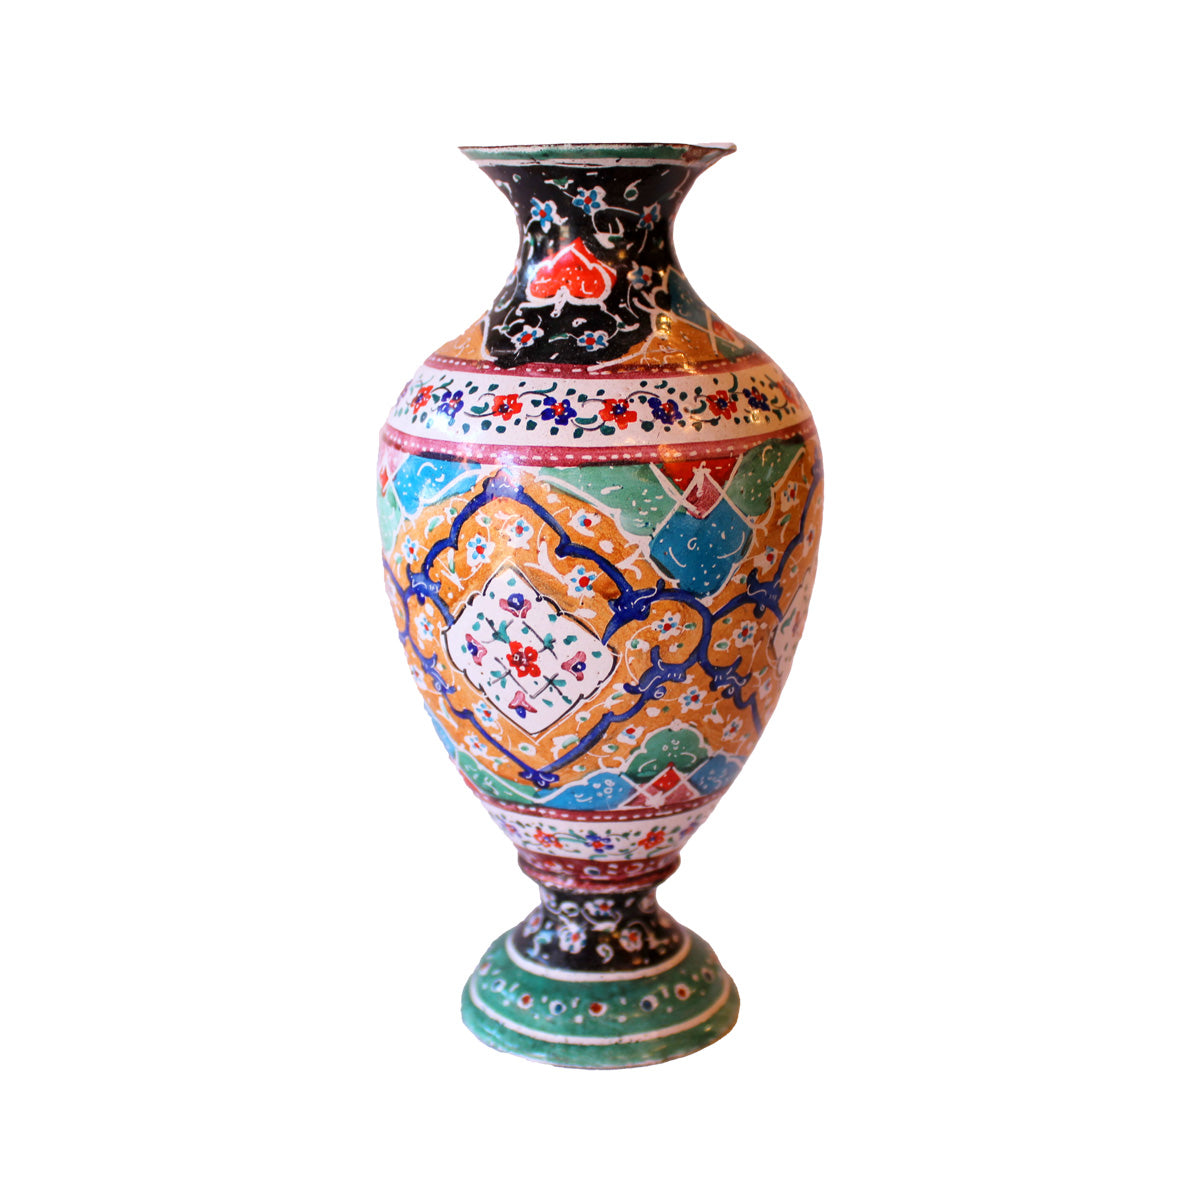 Lille vase af messing med pålagt emalje i Kanton stil